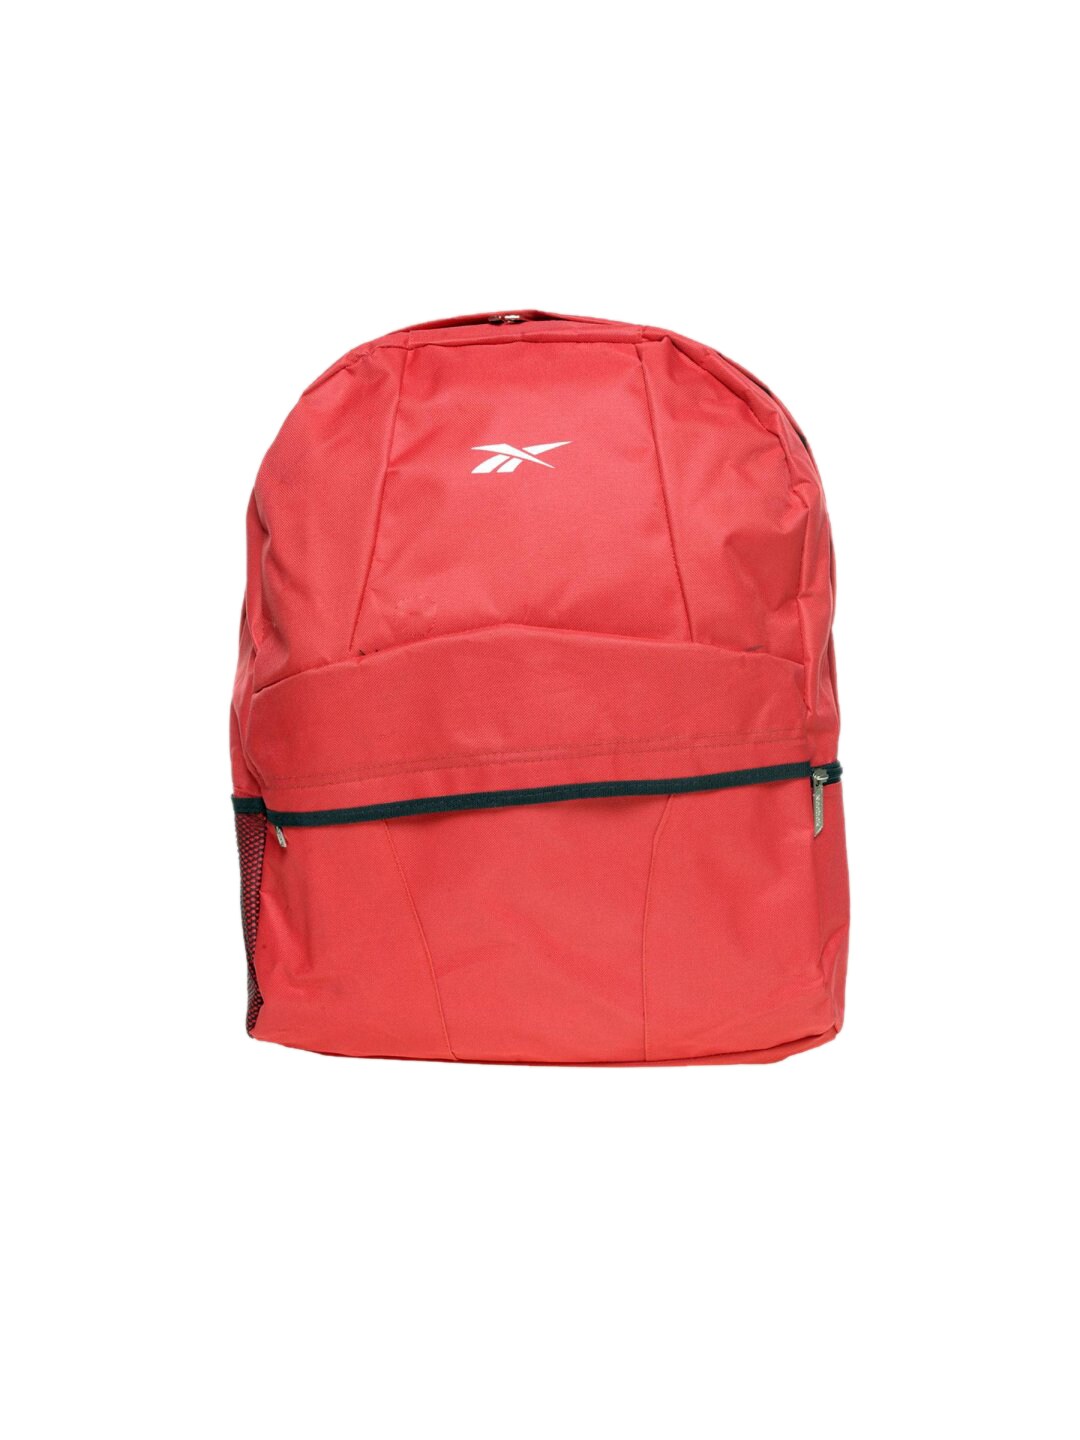 Reebok Unisex Red Backpack